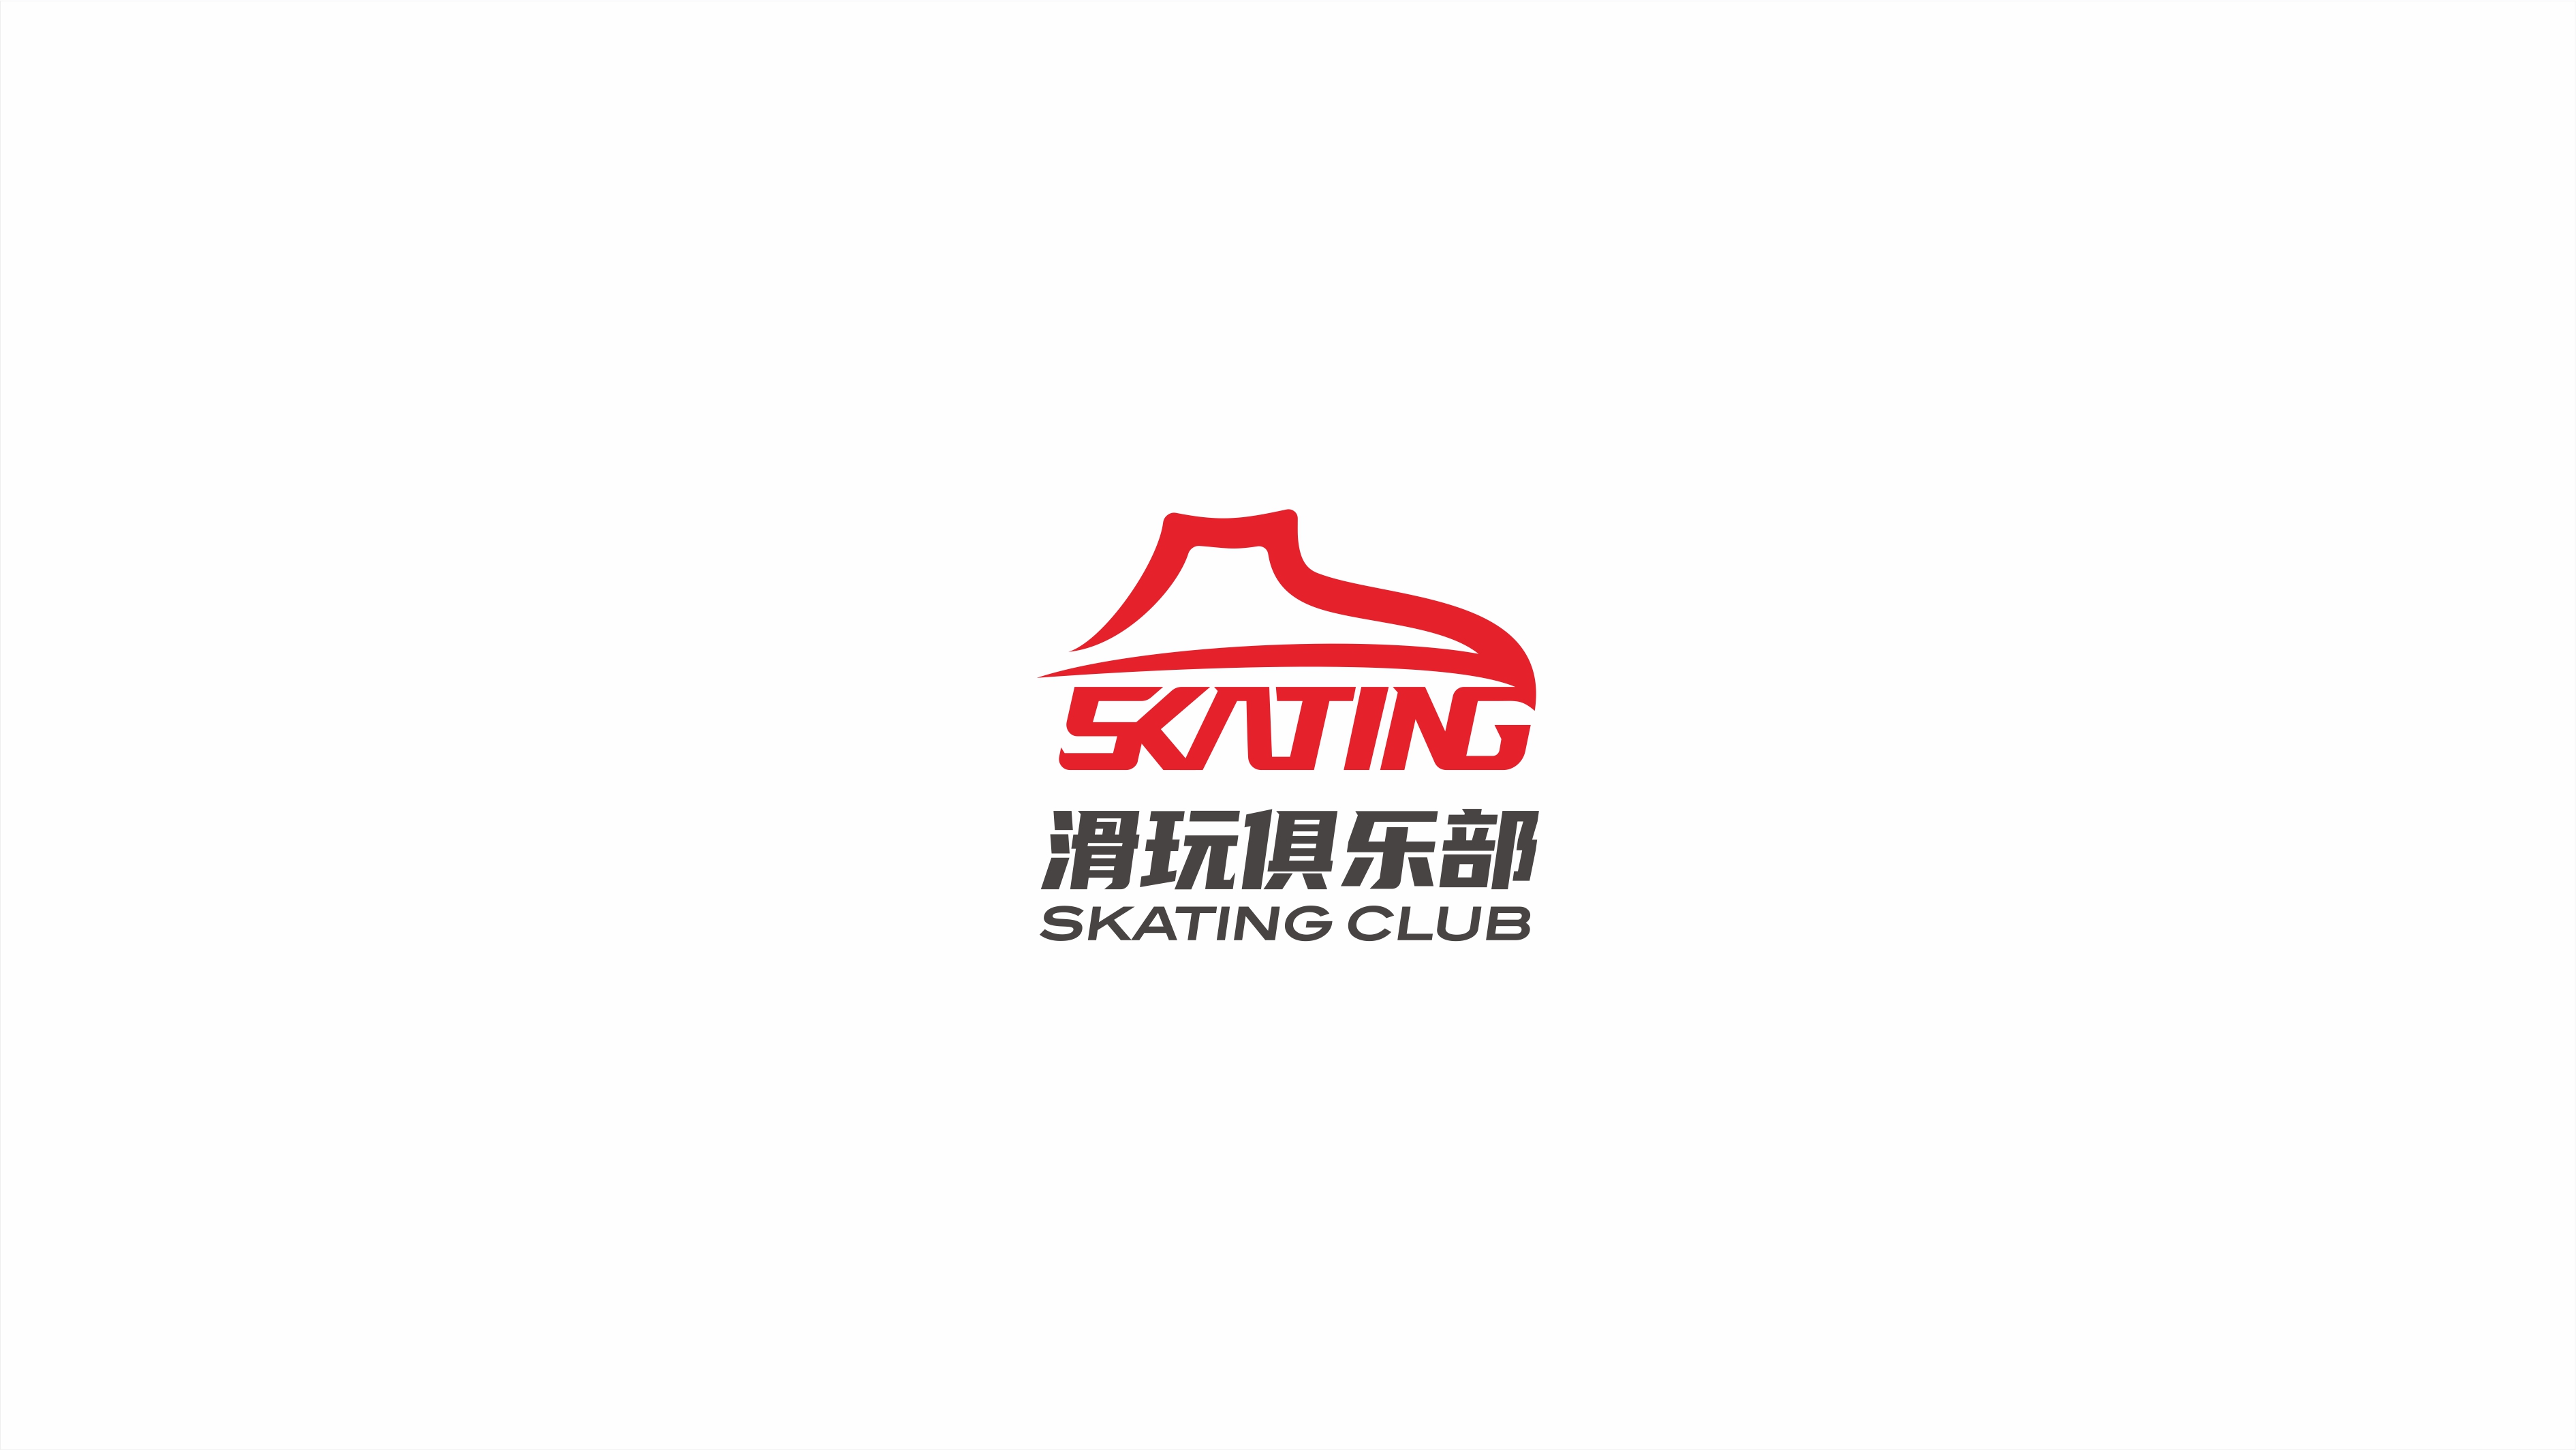 現代、年輕的滑玩俱樂部品牌logo設計